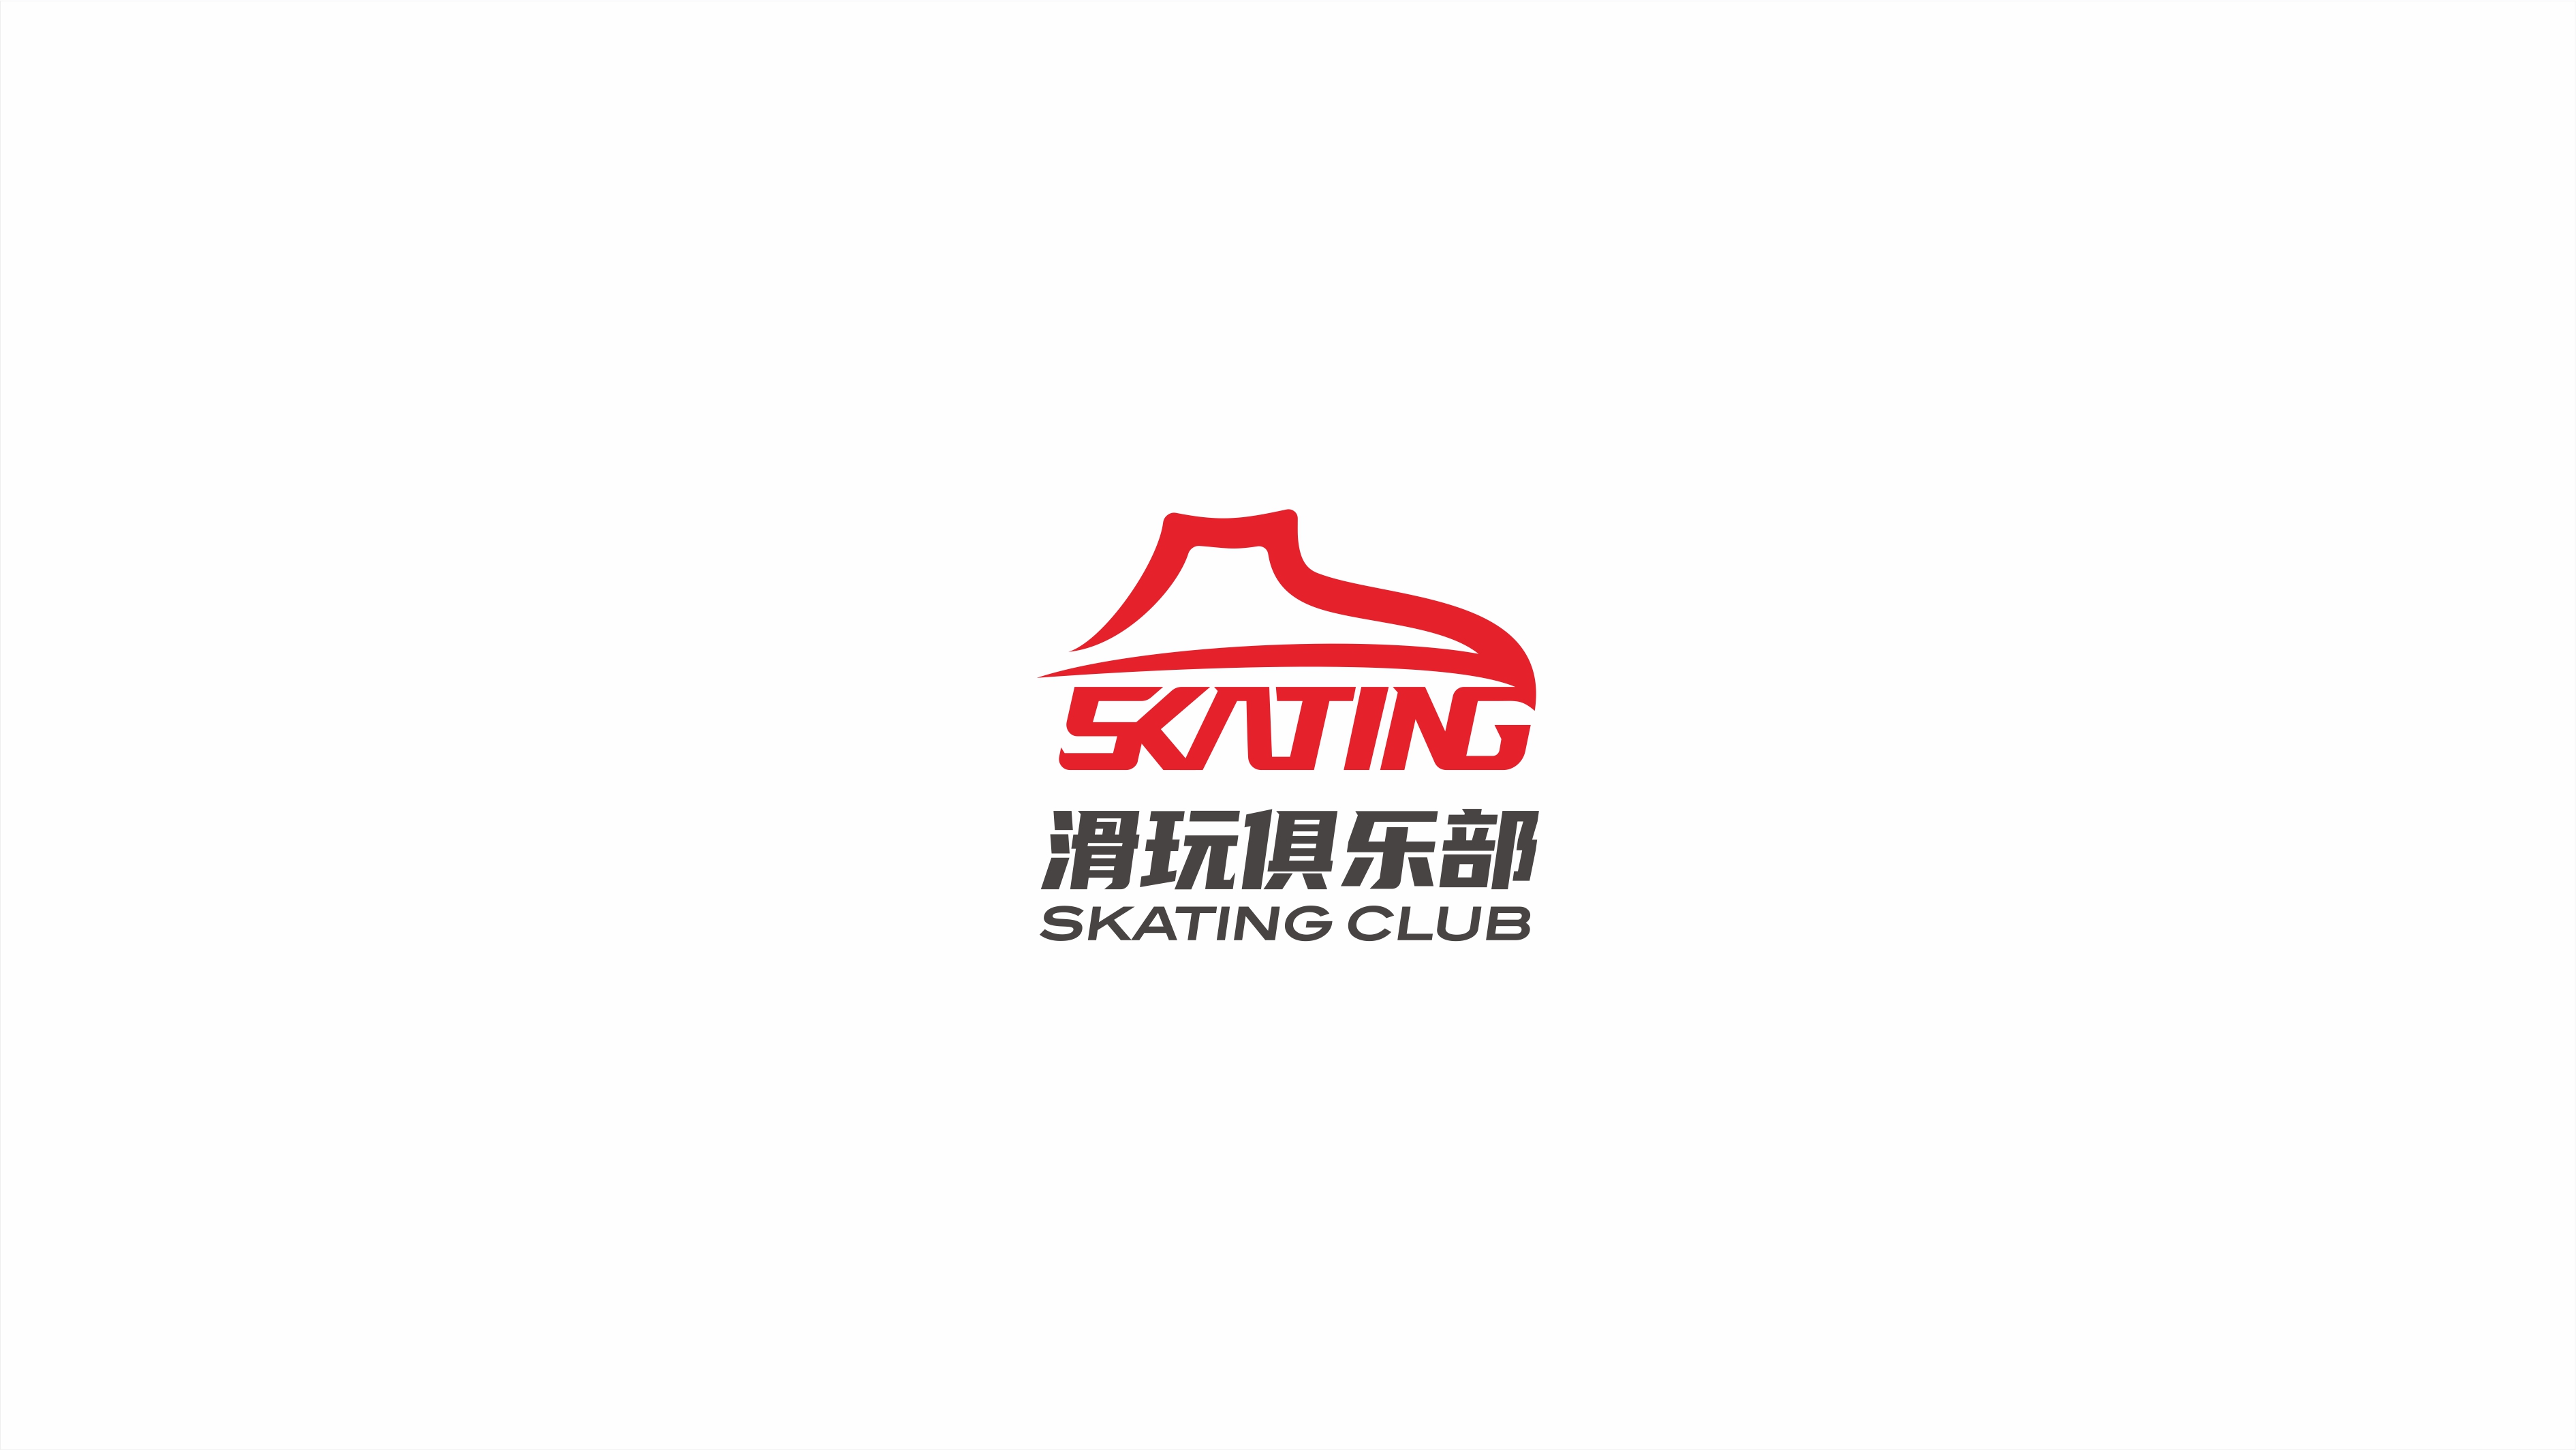 現代、年輕的滑玩俱樂部品牌logo設計